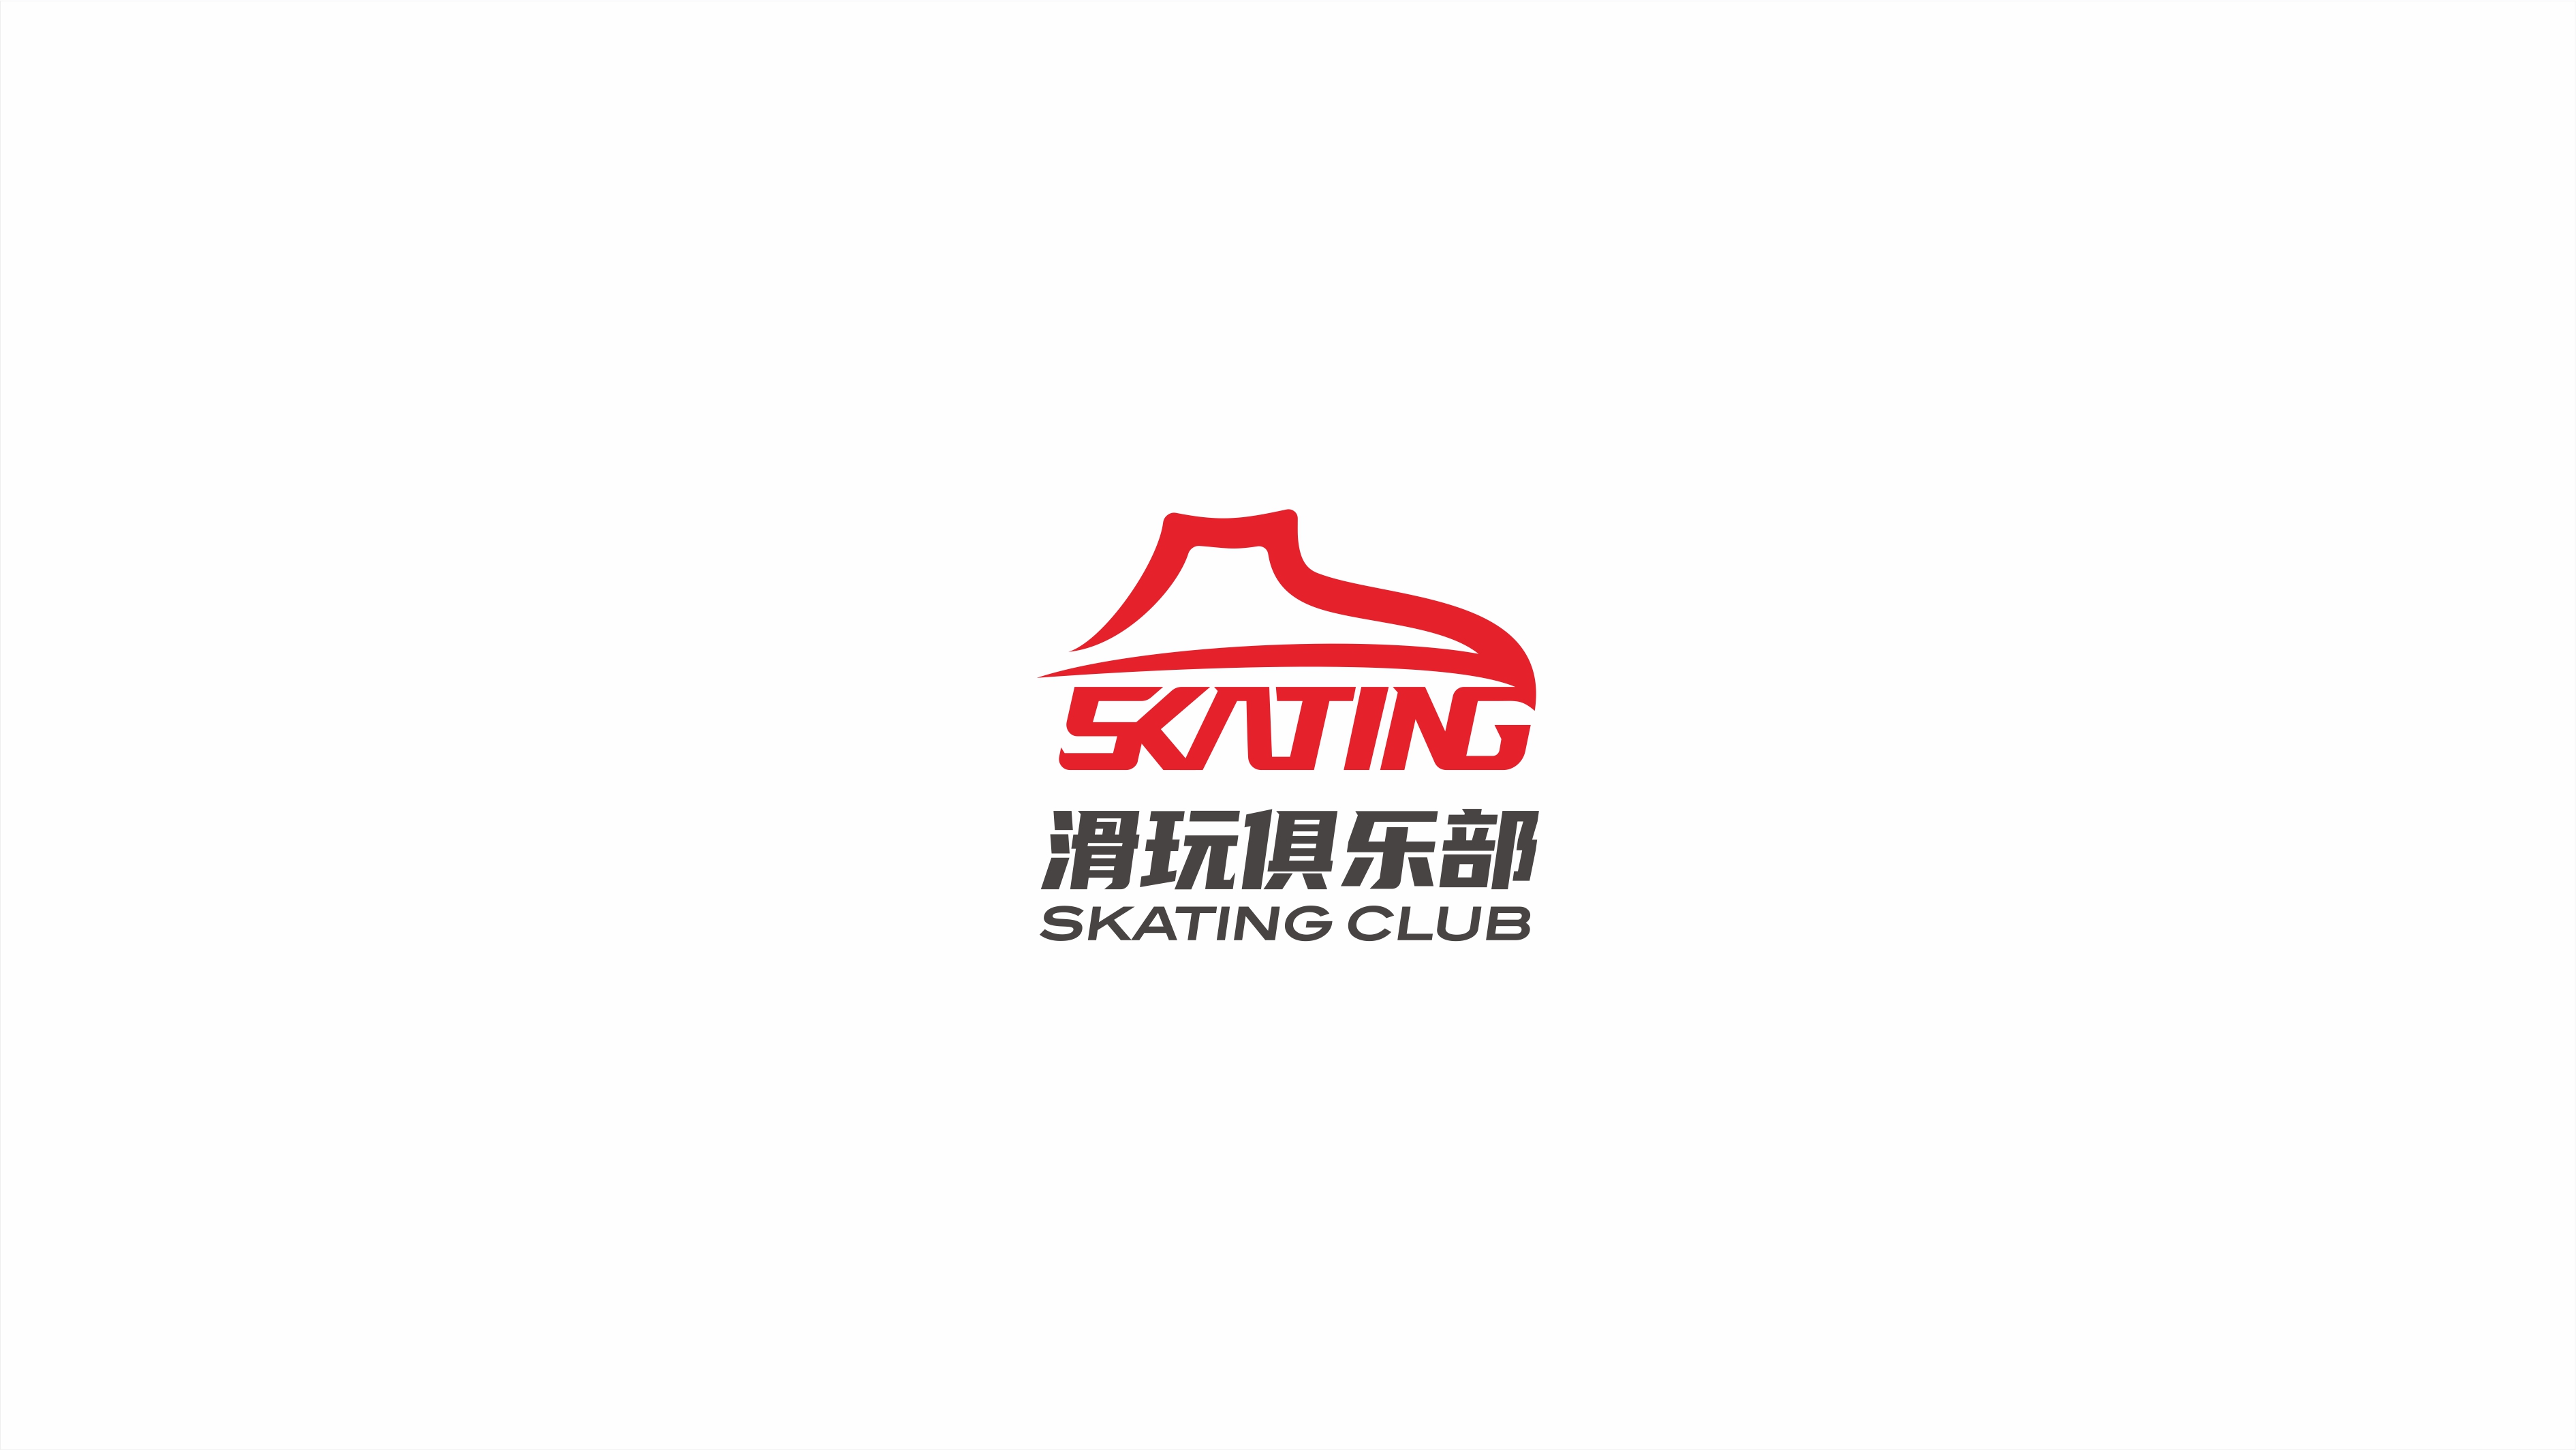 現代、年輕的滑玩俱樂部品牌logo設計